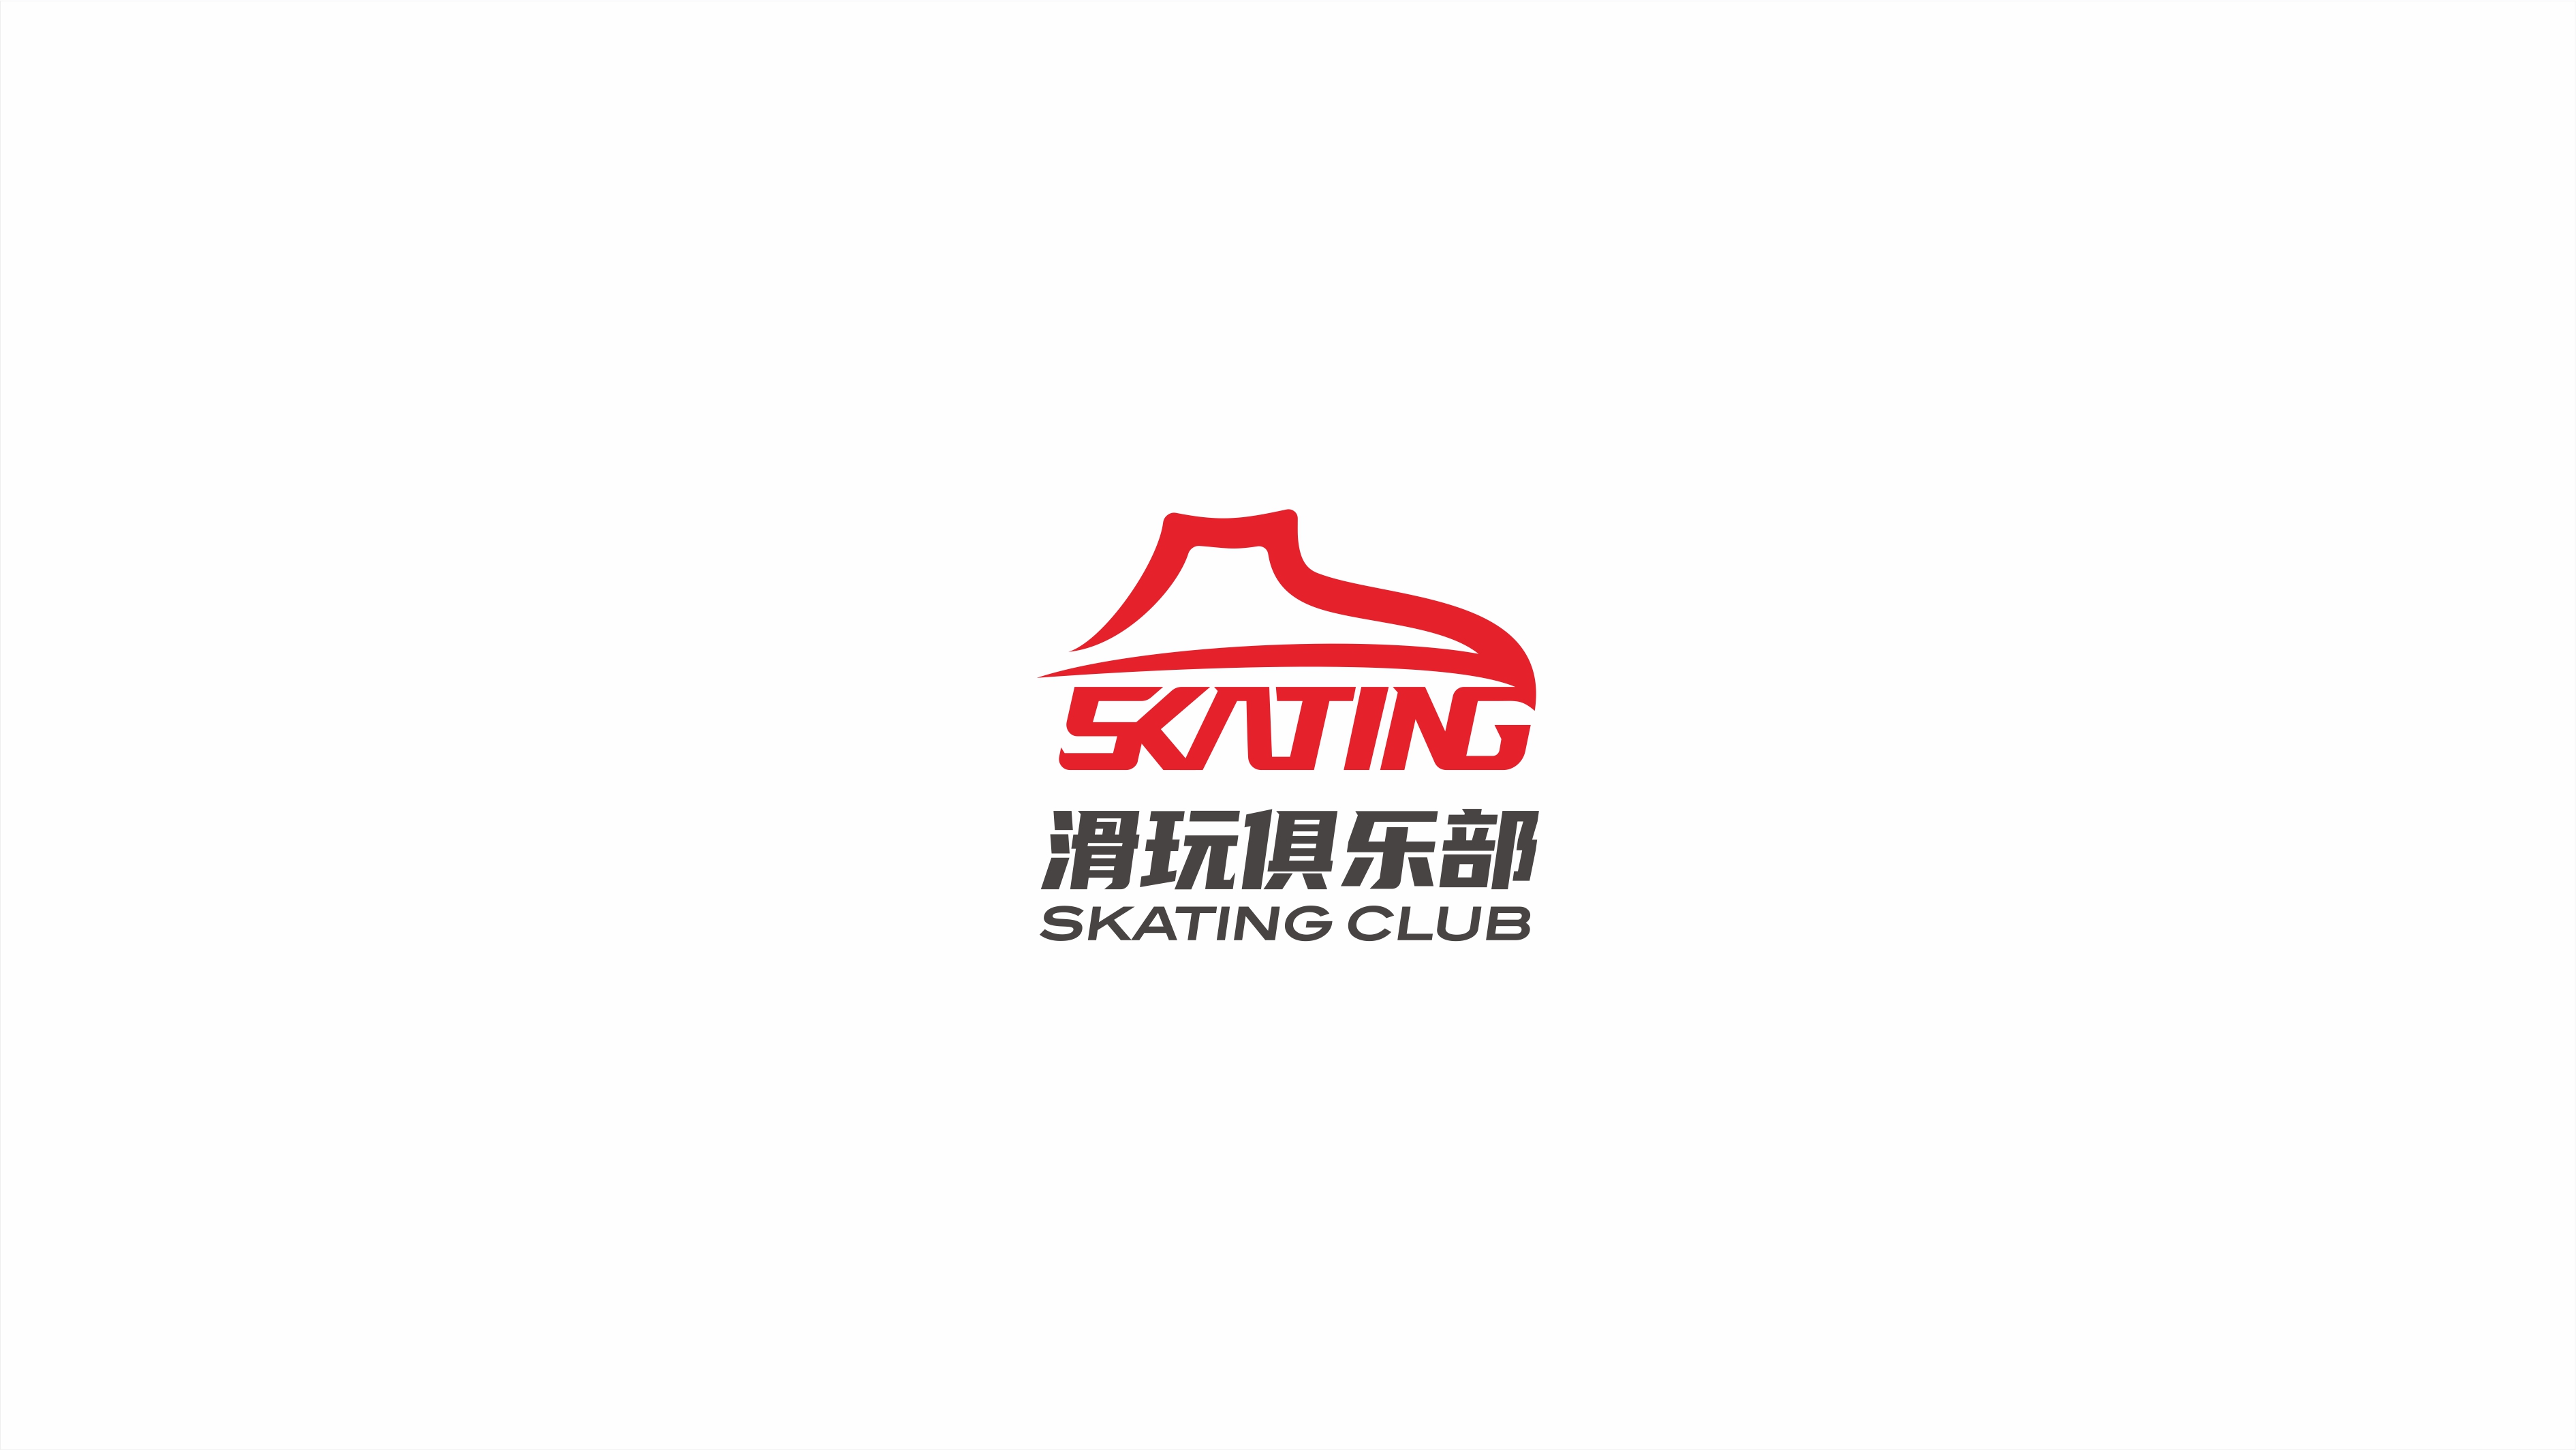 現代、年輕的滑玩俱樂部品牌logo設計